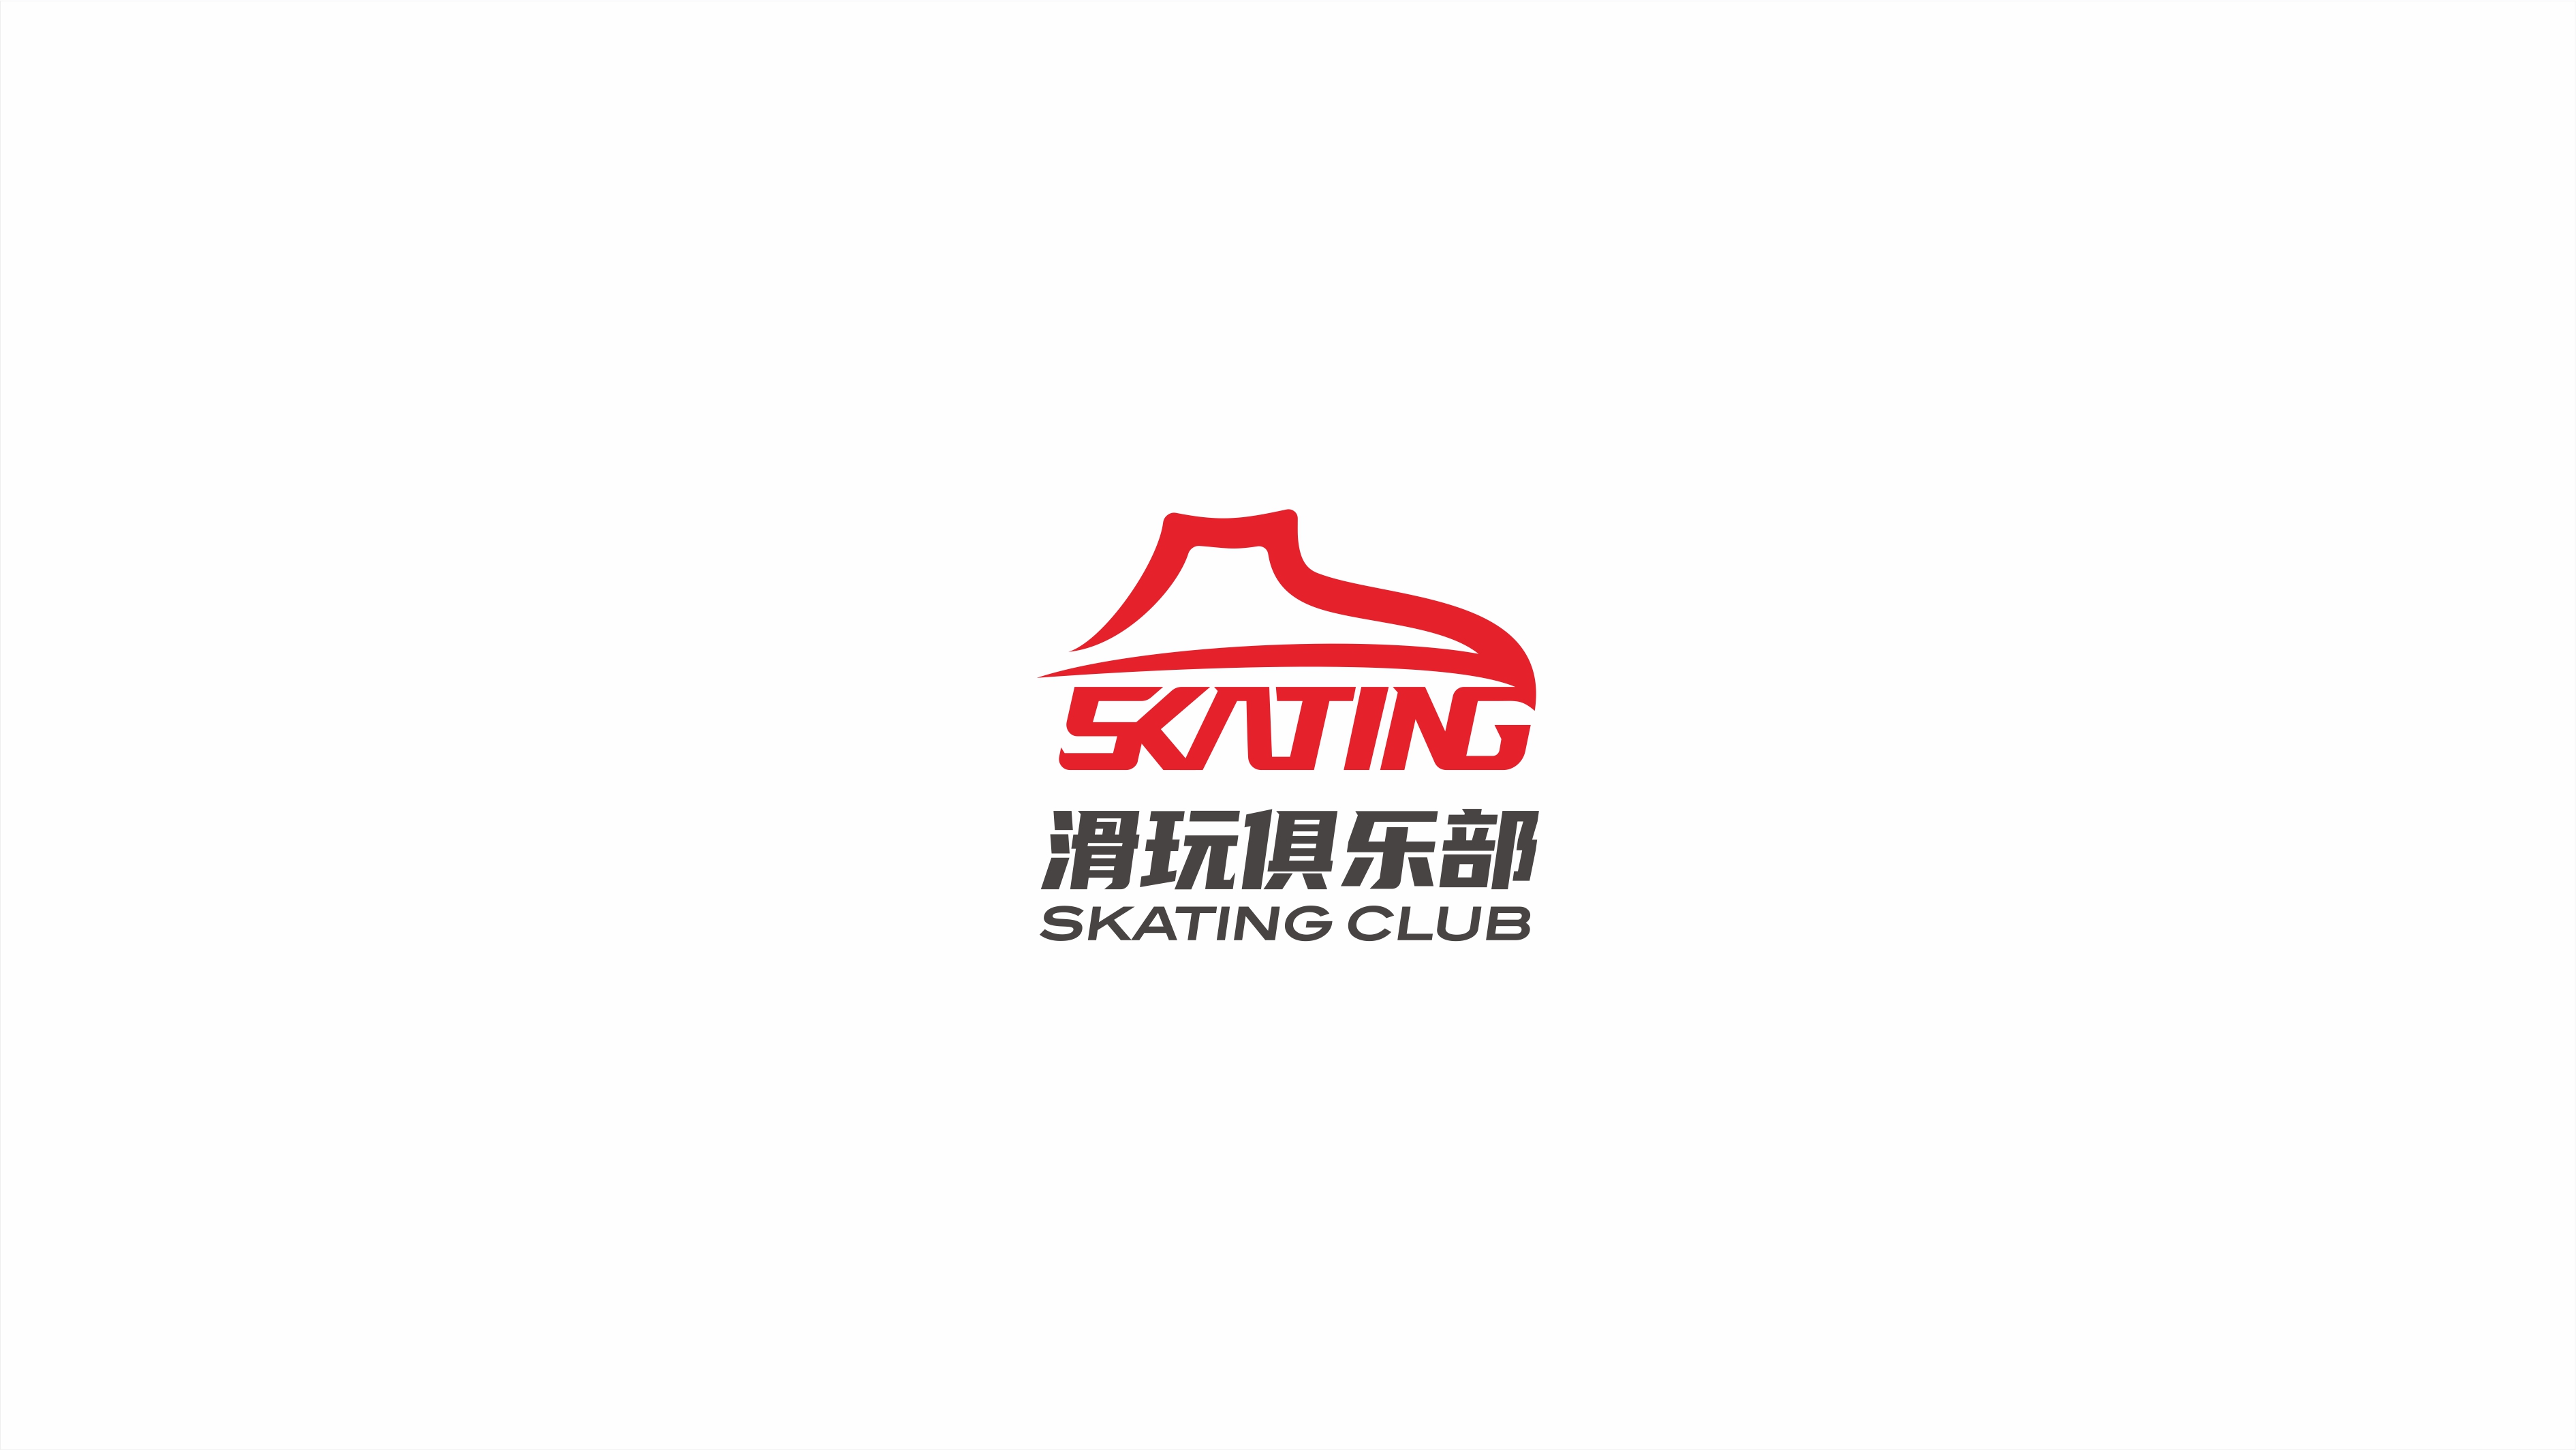 現代、年輕的滑玩俱樂部品牌logo設計